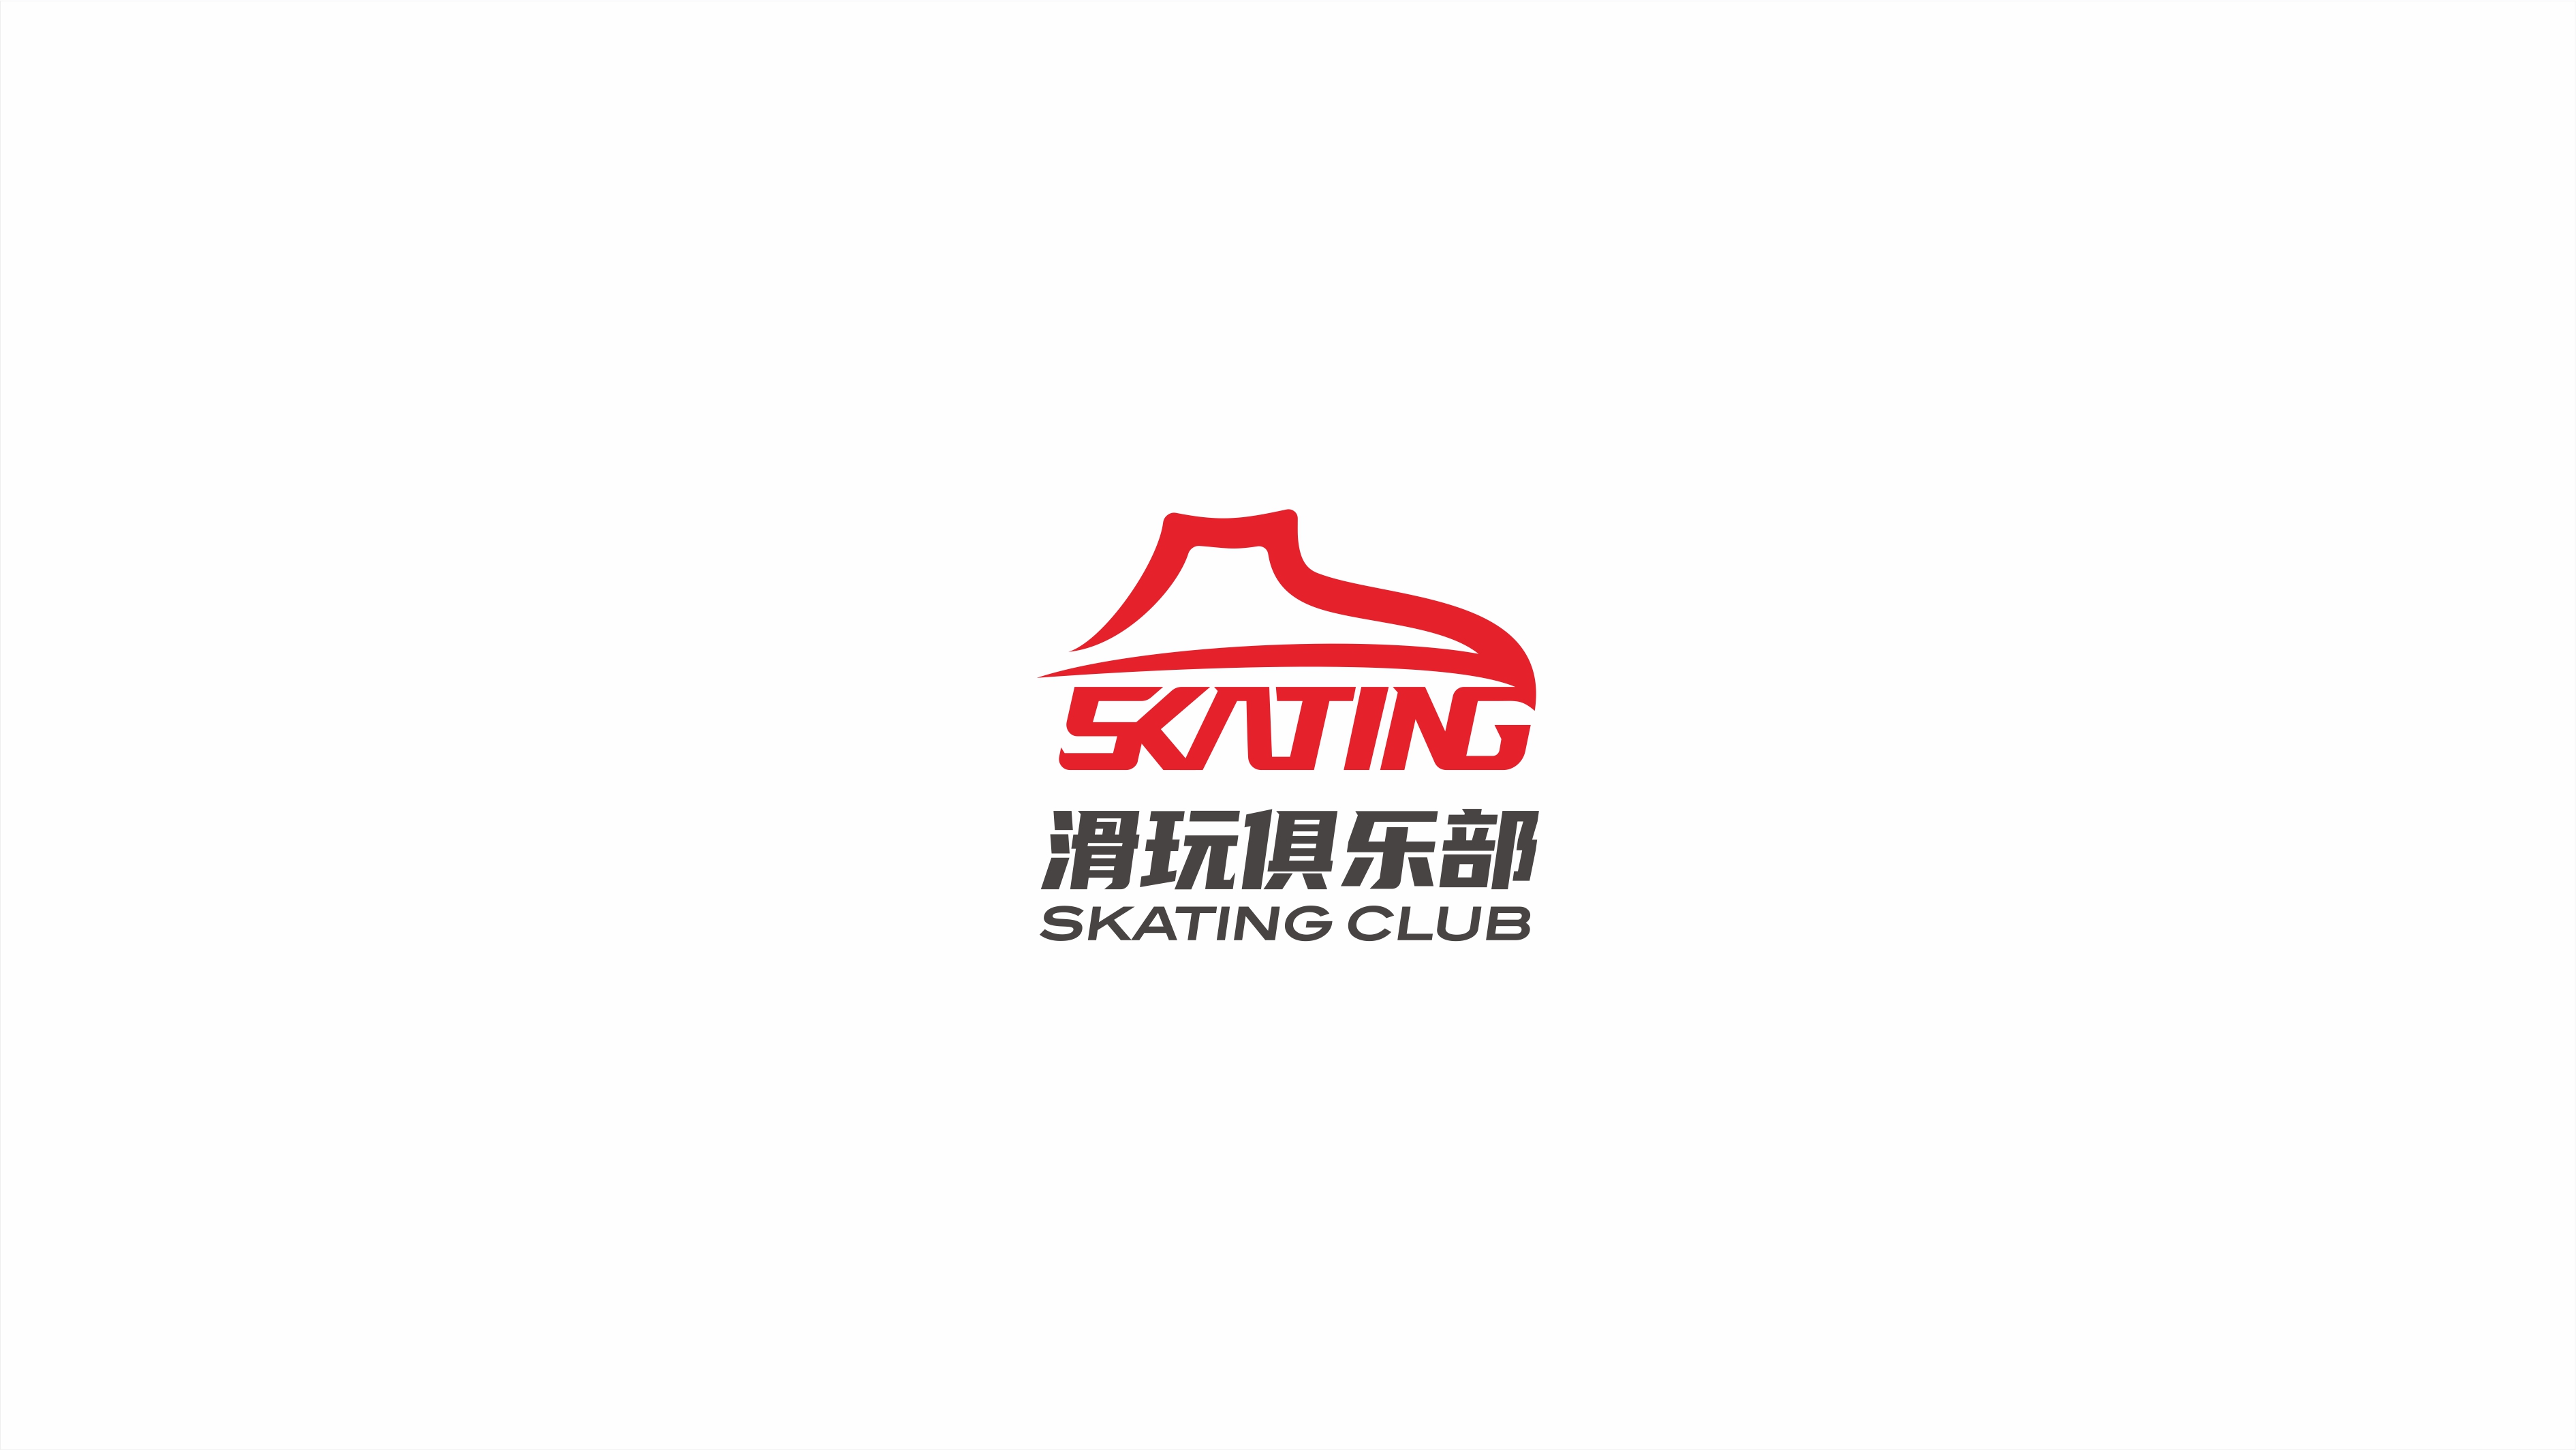 現代、年輕的滑玩俱樂部品牌logo設計